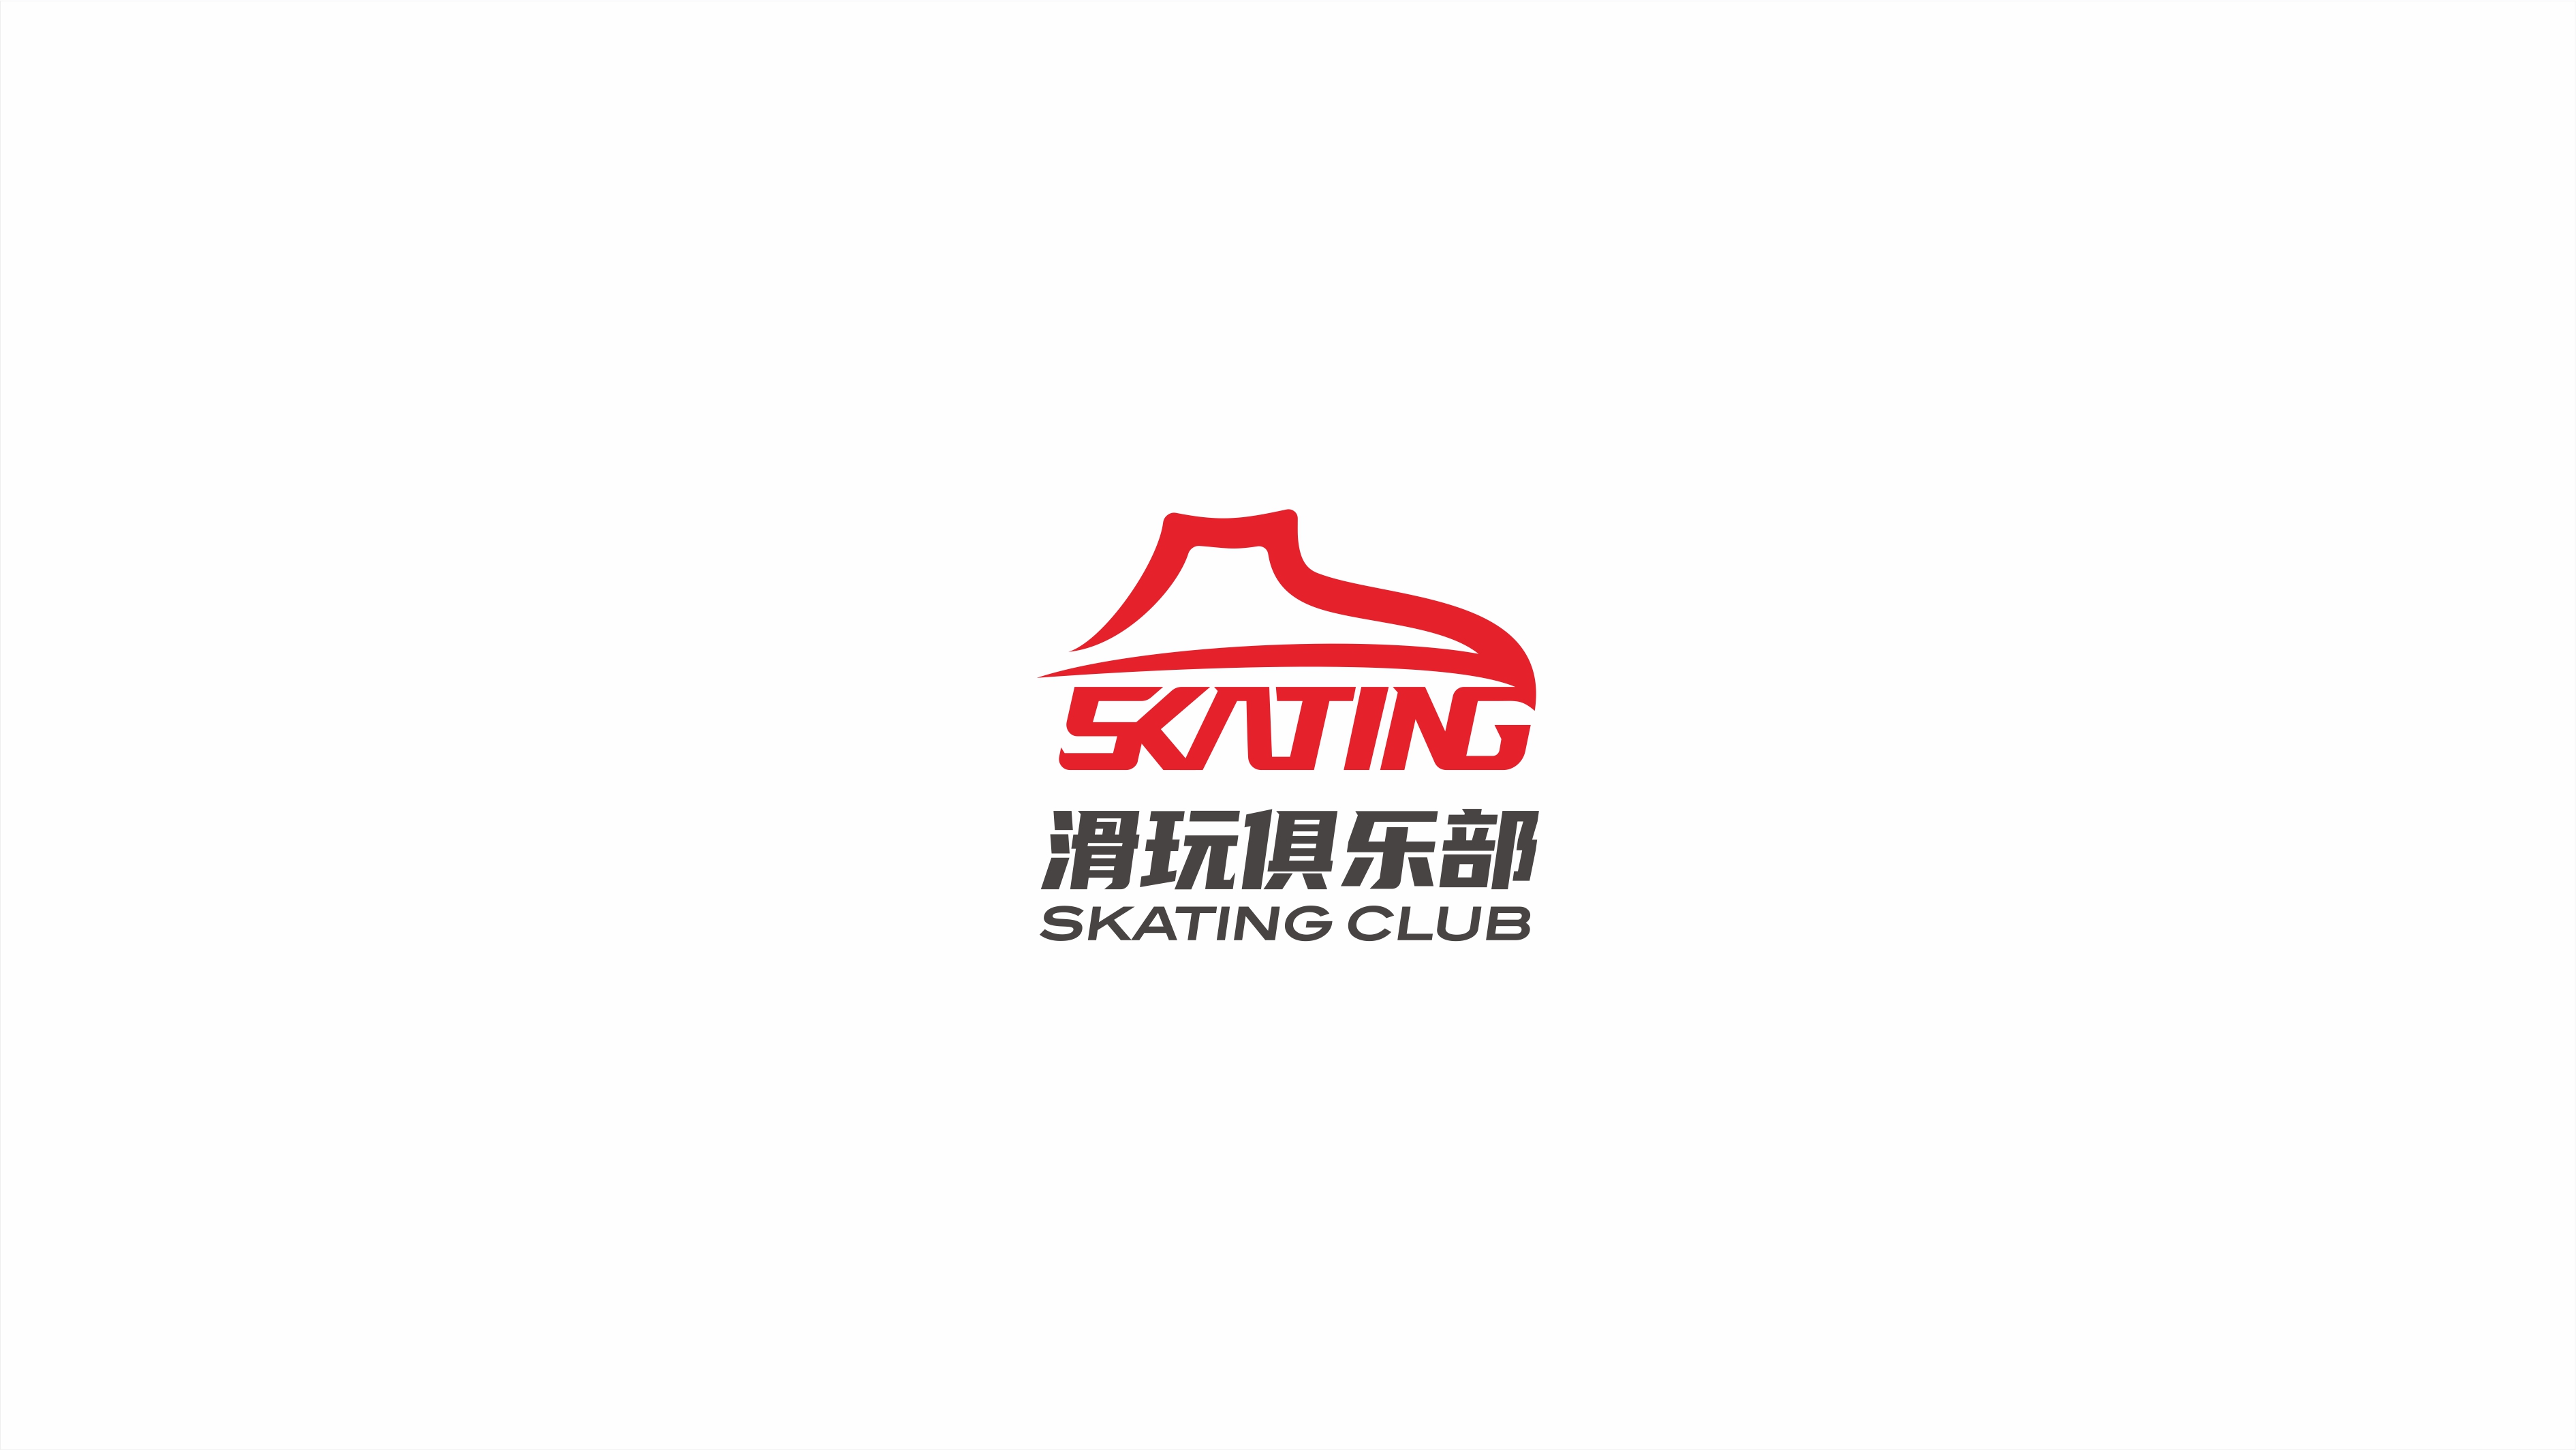 現代、年輕的滑玩俱樂部品牌logo設計